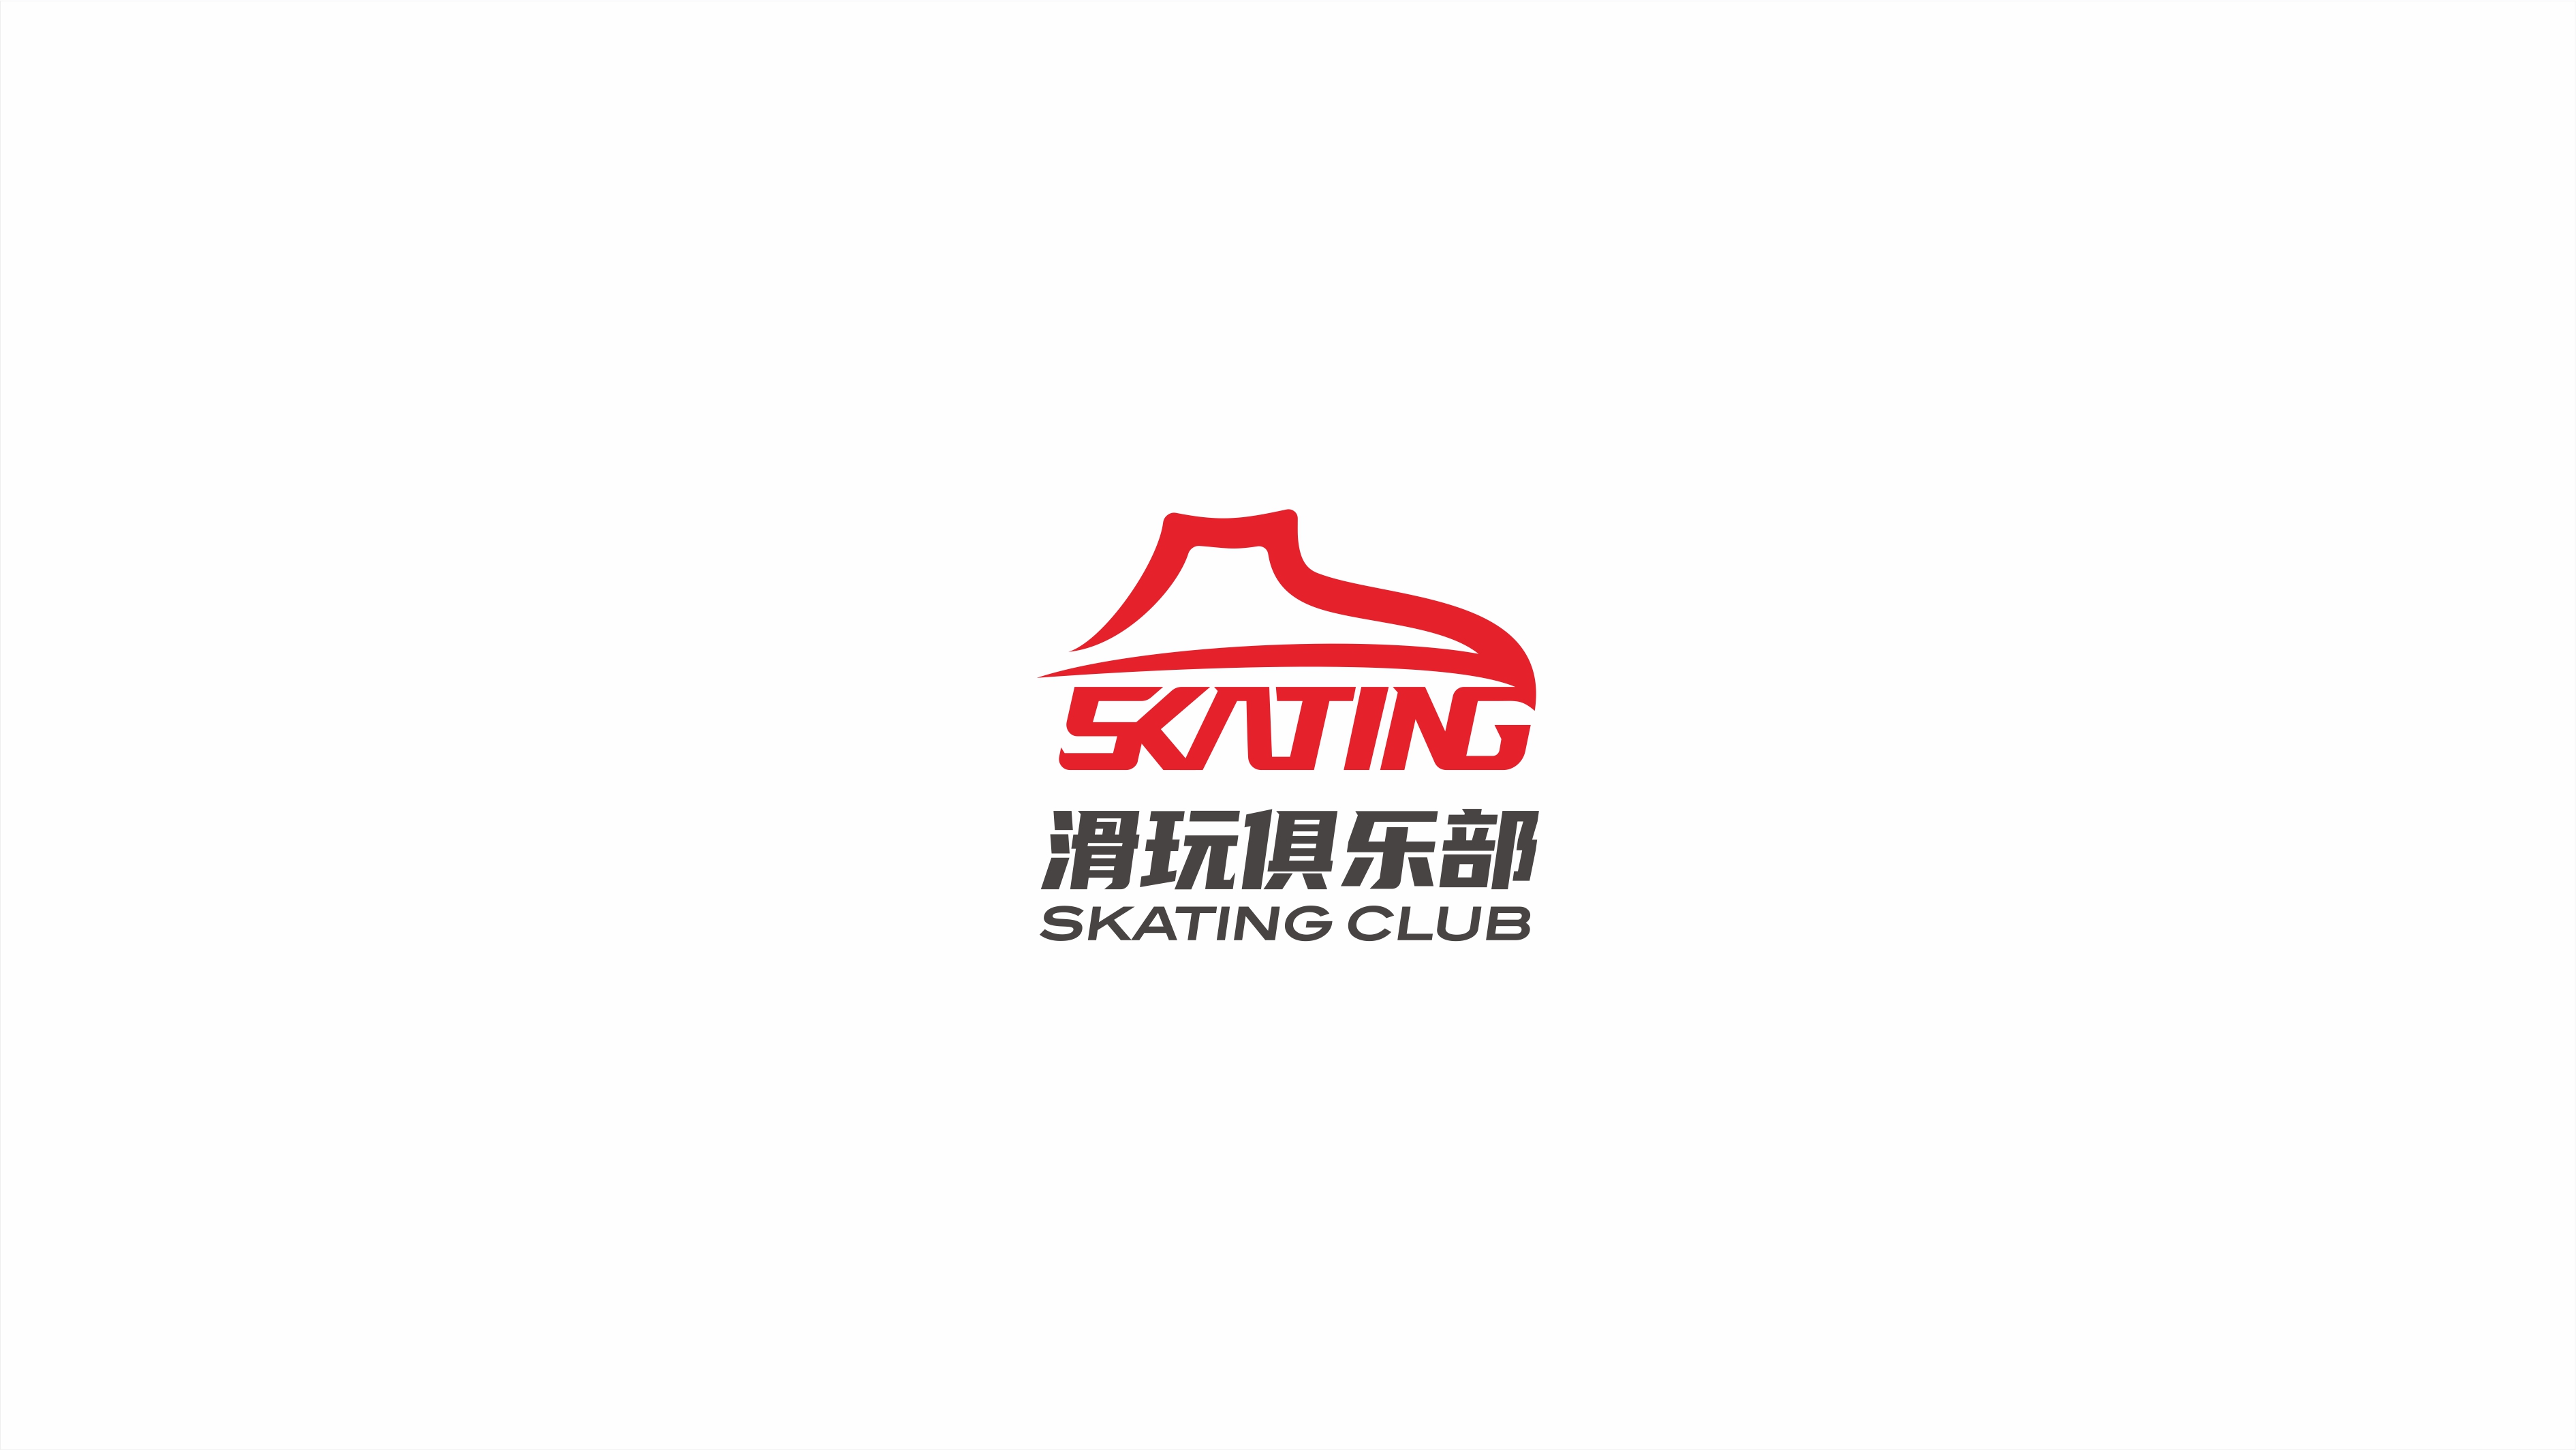 現代、年輕的滑玩俱樂部品牌logo設計